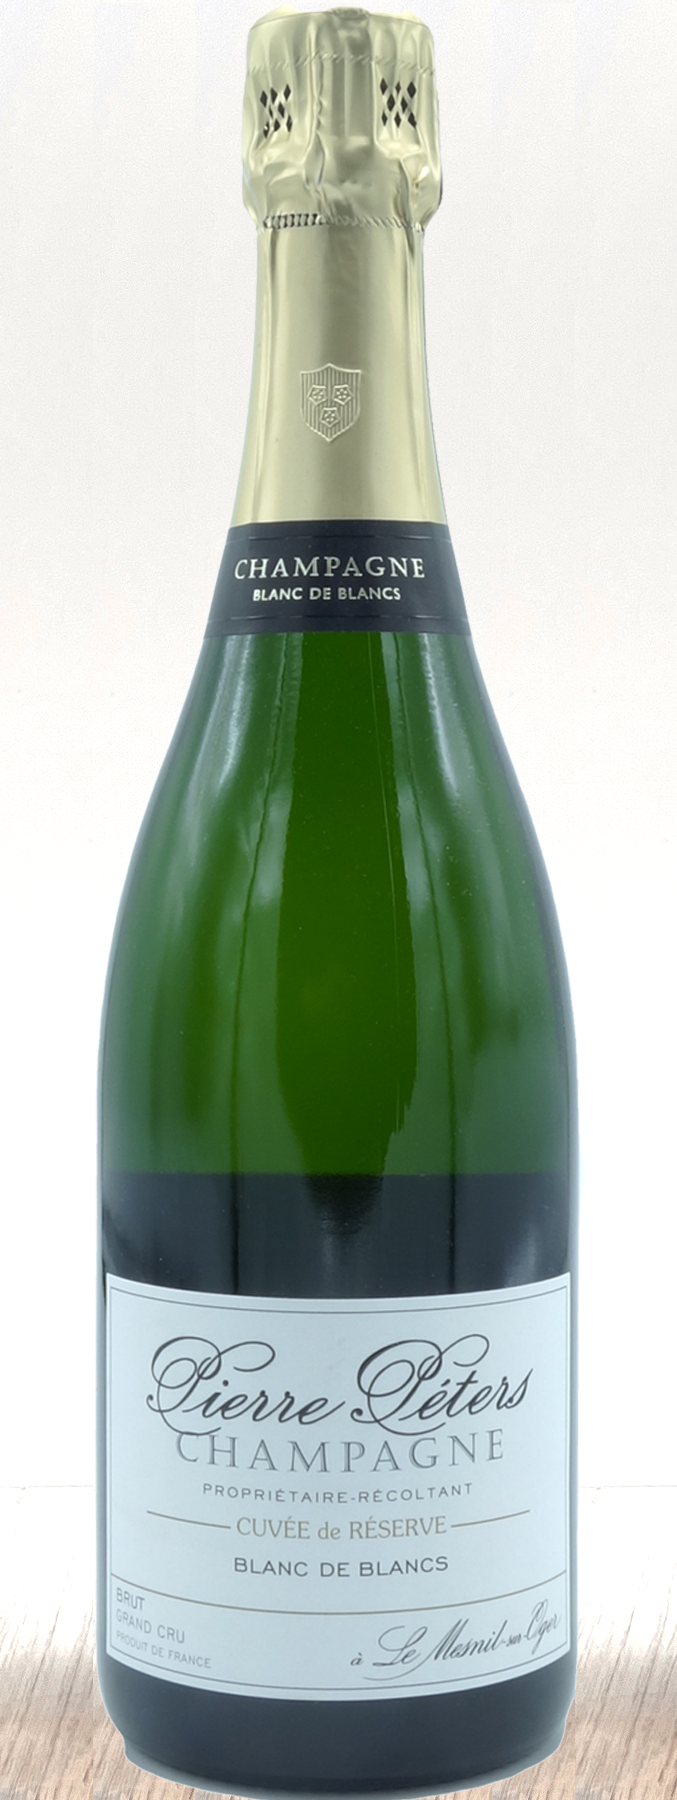 NV Pierre Péters Cuvée Réserve Brut Champagne